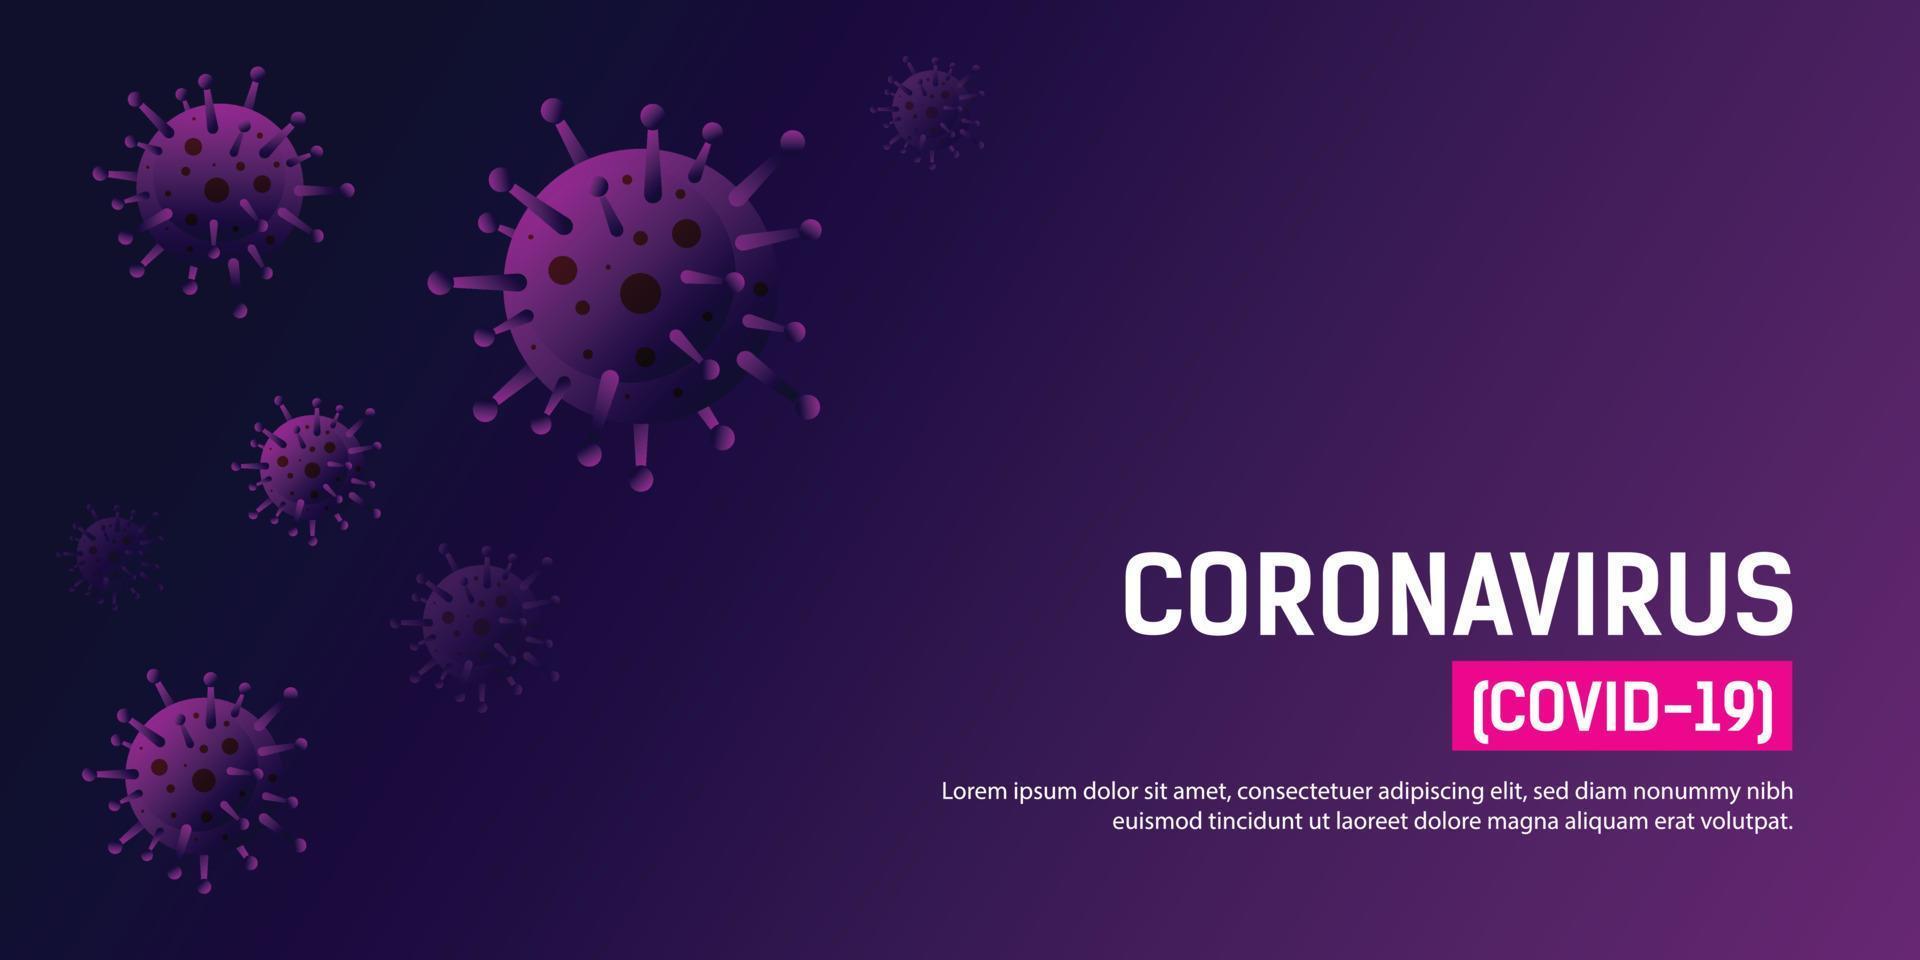 gefährliche pandemie coronavirus covid19 grippe hintergrund vektor